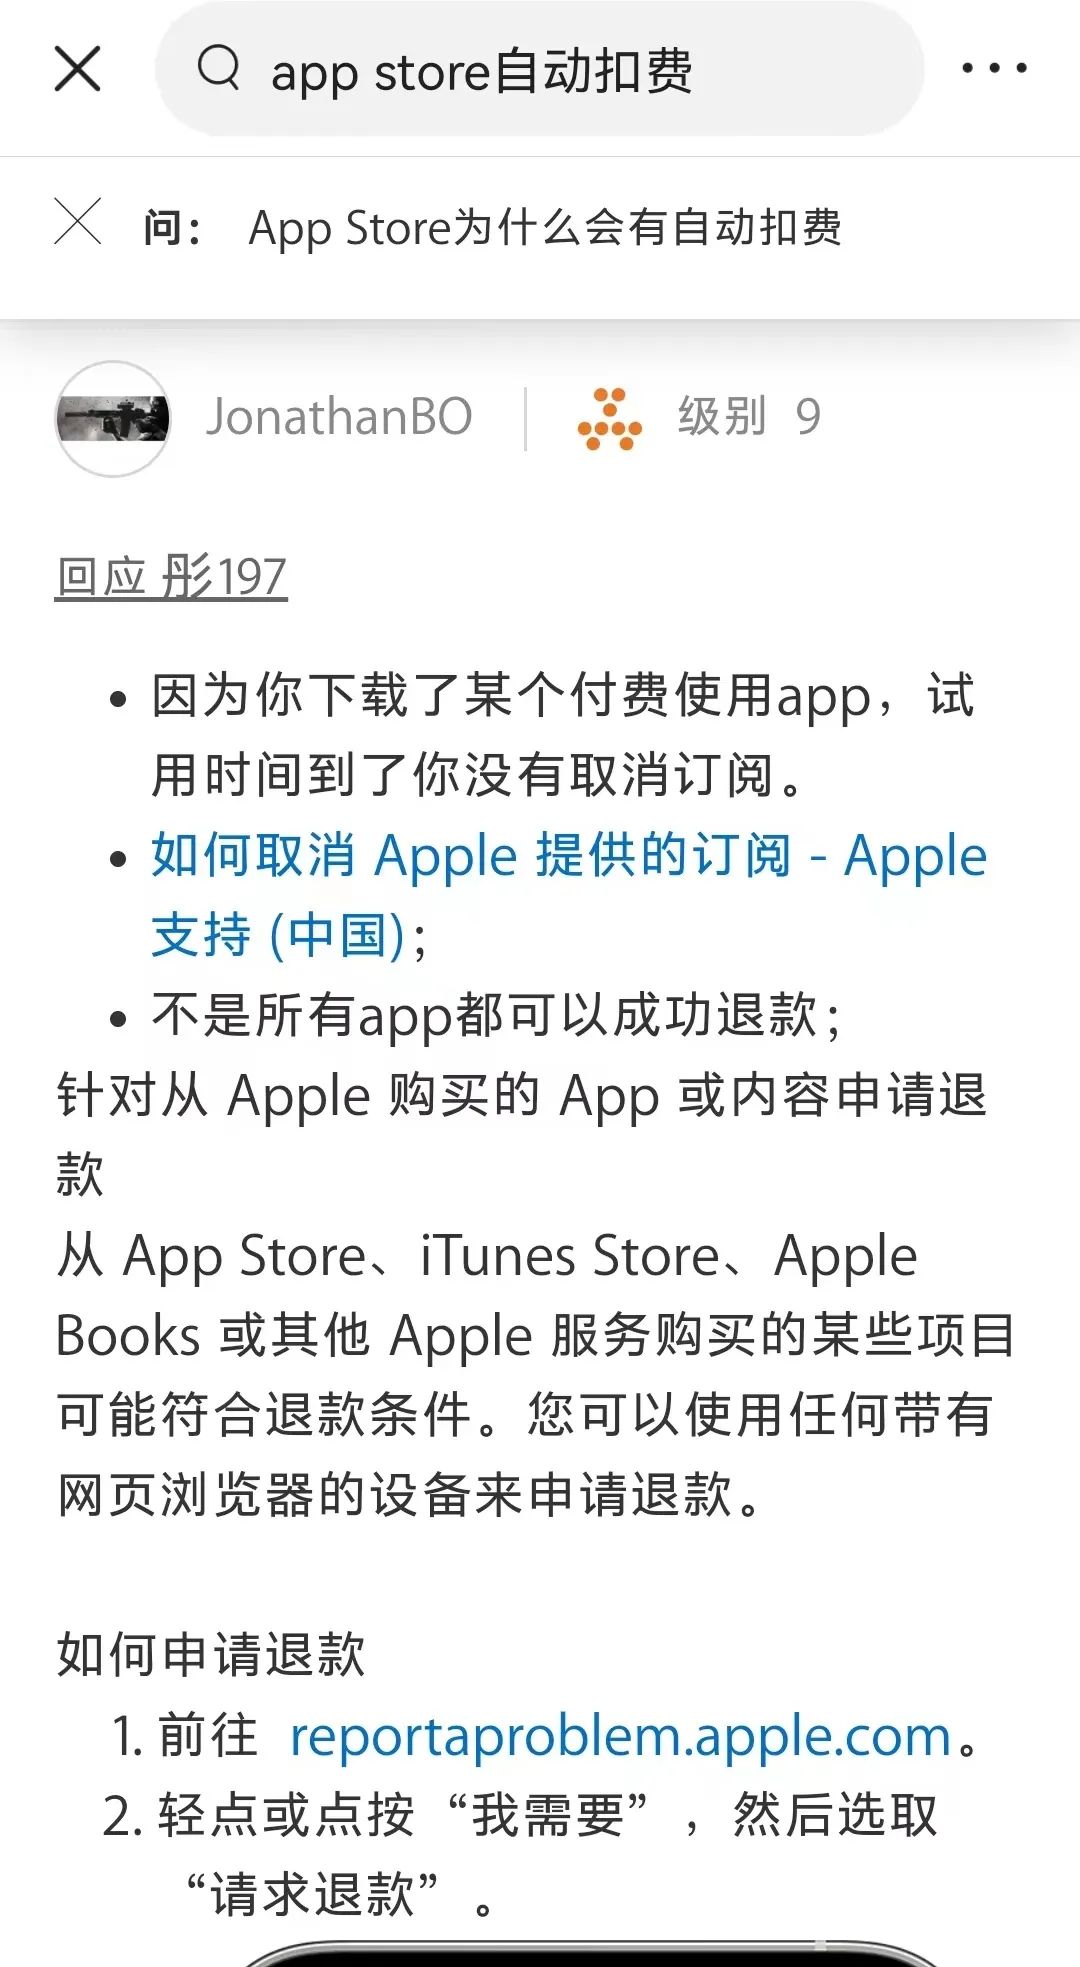 注册美区apple id账户_美区apple id分享2017_如何使用美区apple id付费